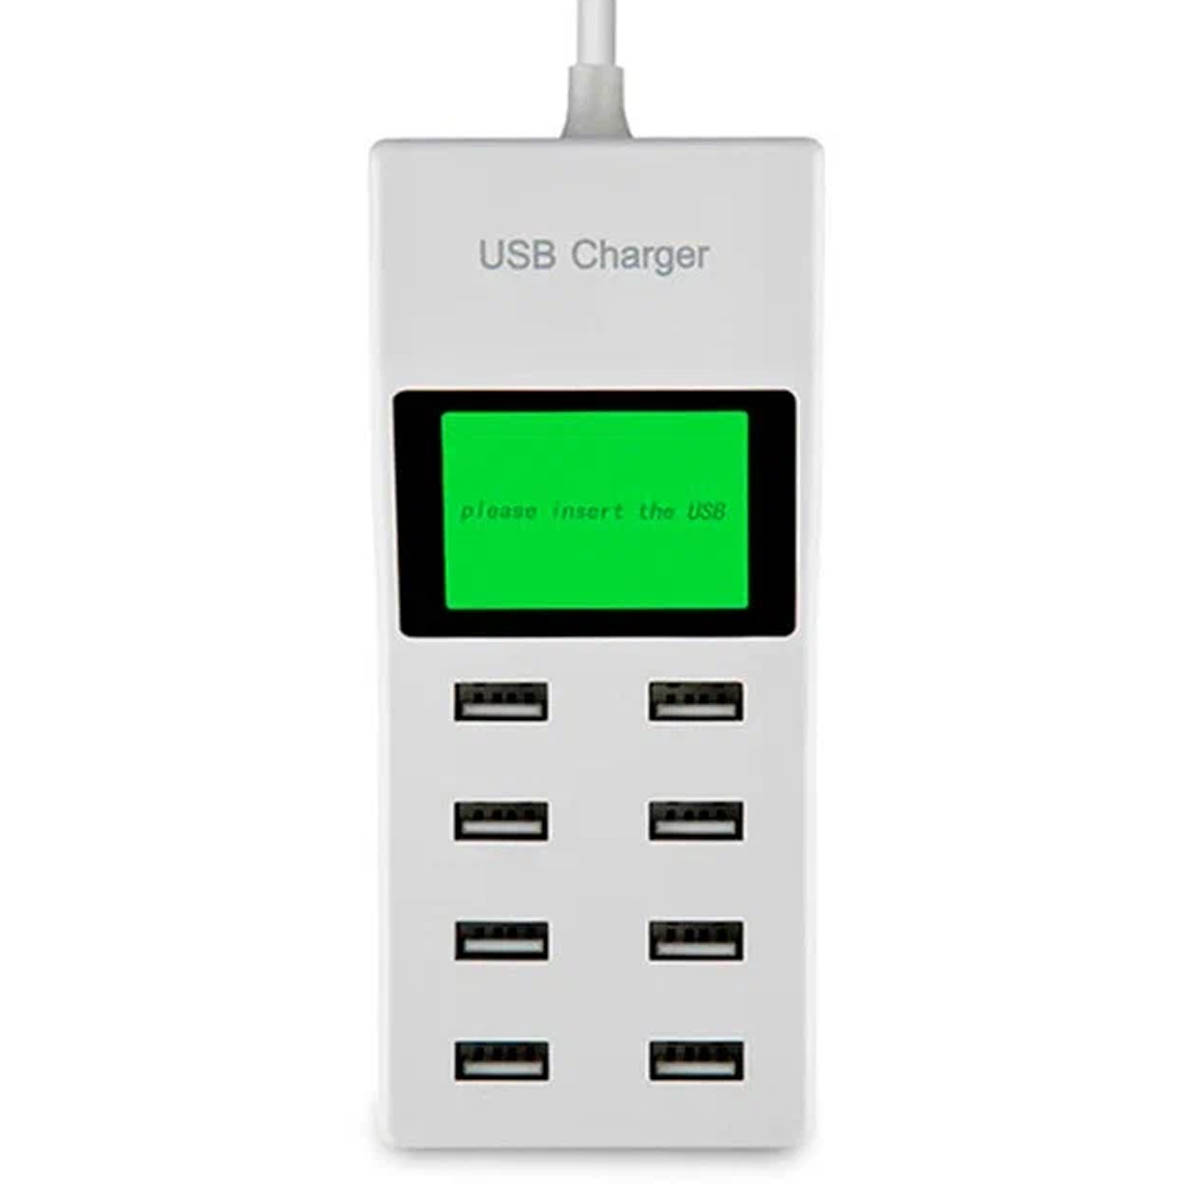 СЗУ (Сетевое зарядное устройство) USB Charger YC-CDA6, 8 портов, 40W, цвет белый